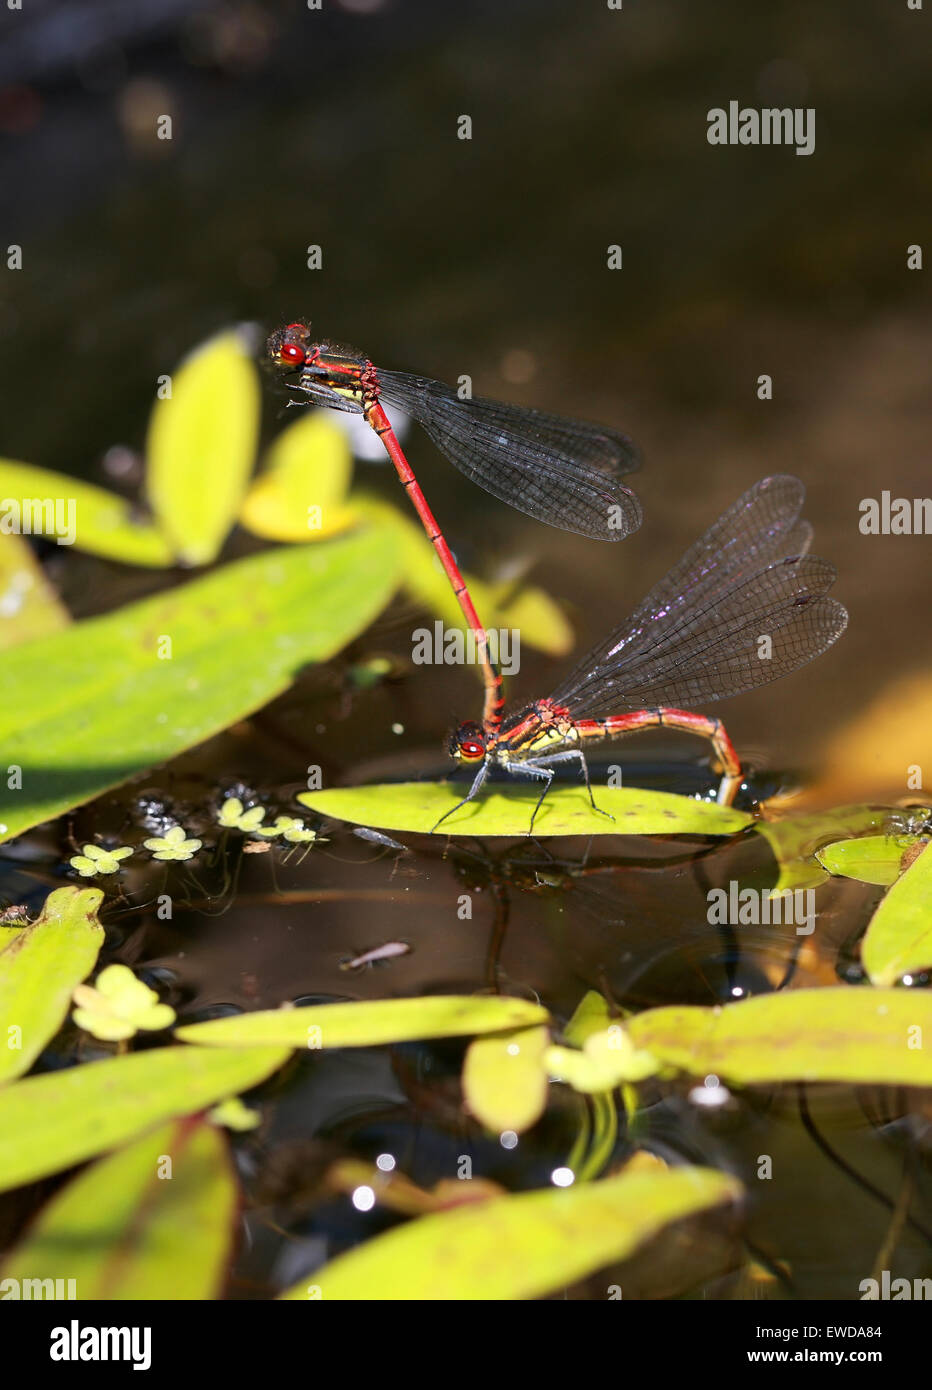 Große rote Libellen, Pyrrhosoma Nymphula, Coenagrionidae, Zygoptera, Odonata. Männliche und weibliche Paar, Eiablage. Stockfoto